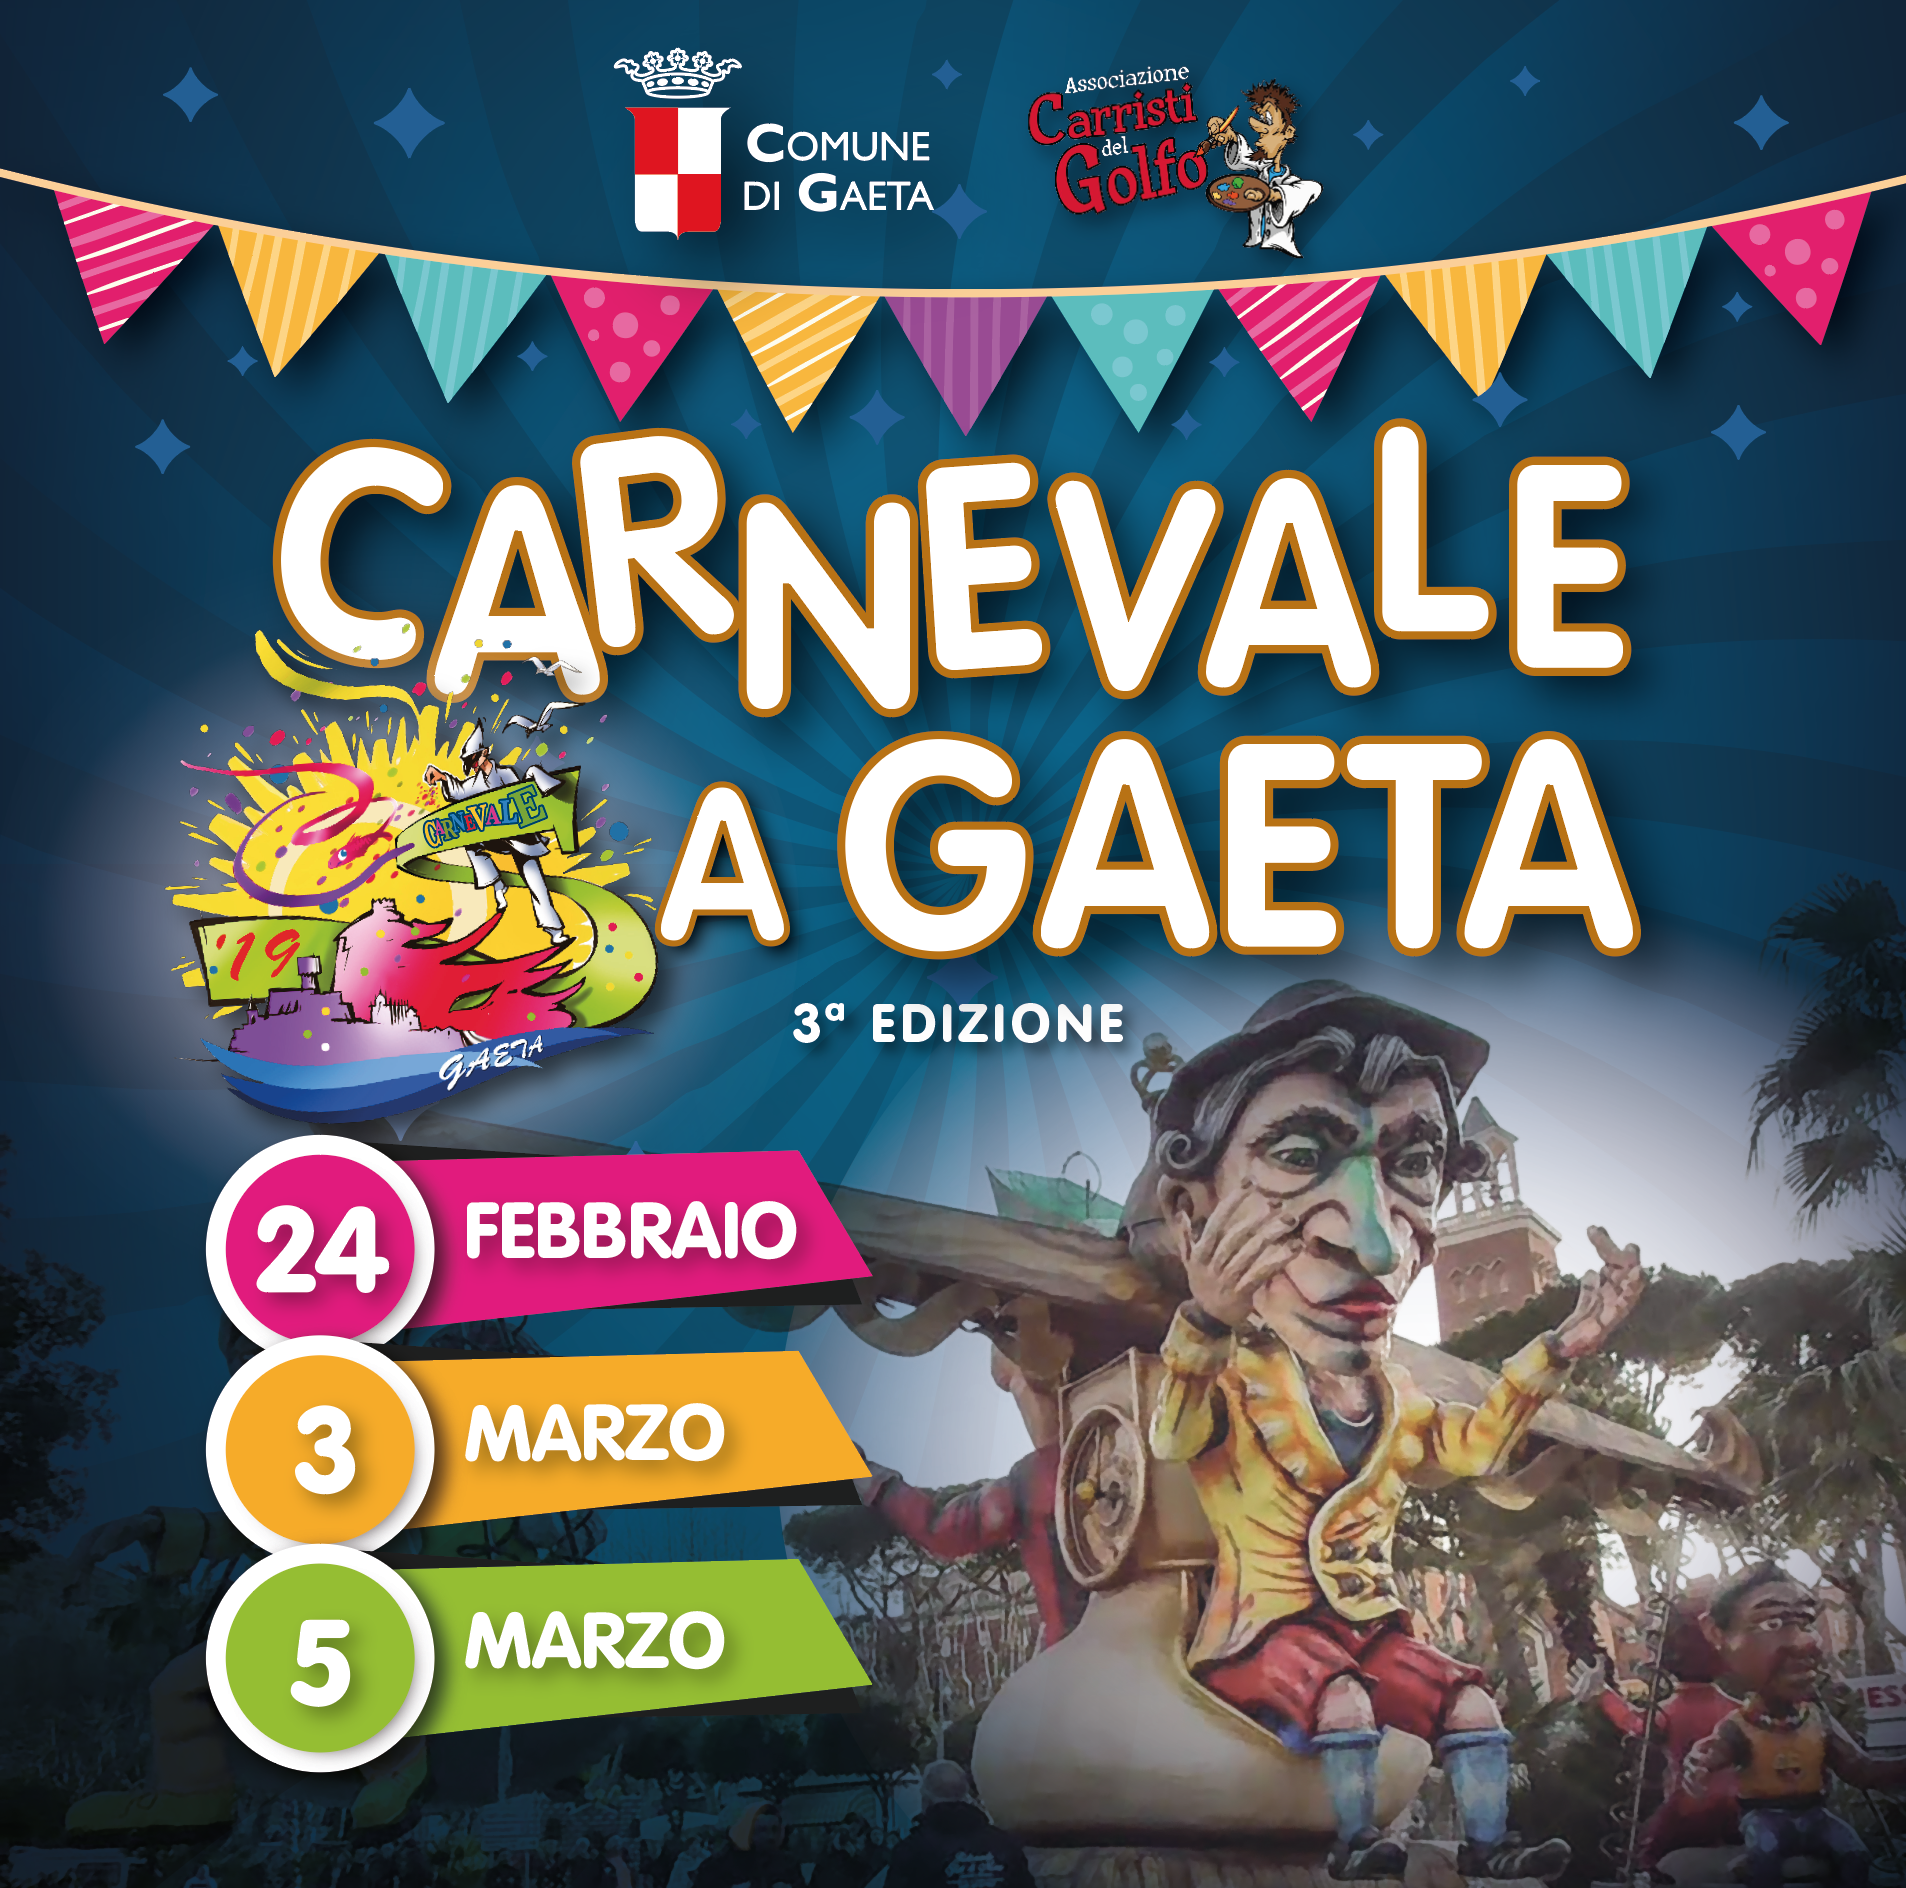 Carnevale a Gaeta, presentata la terza edizione